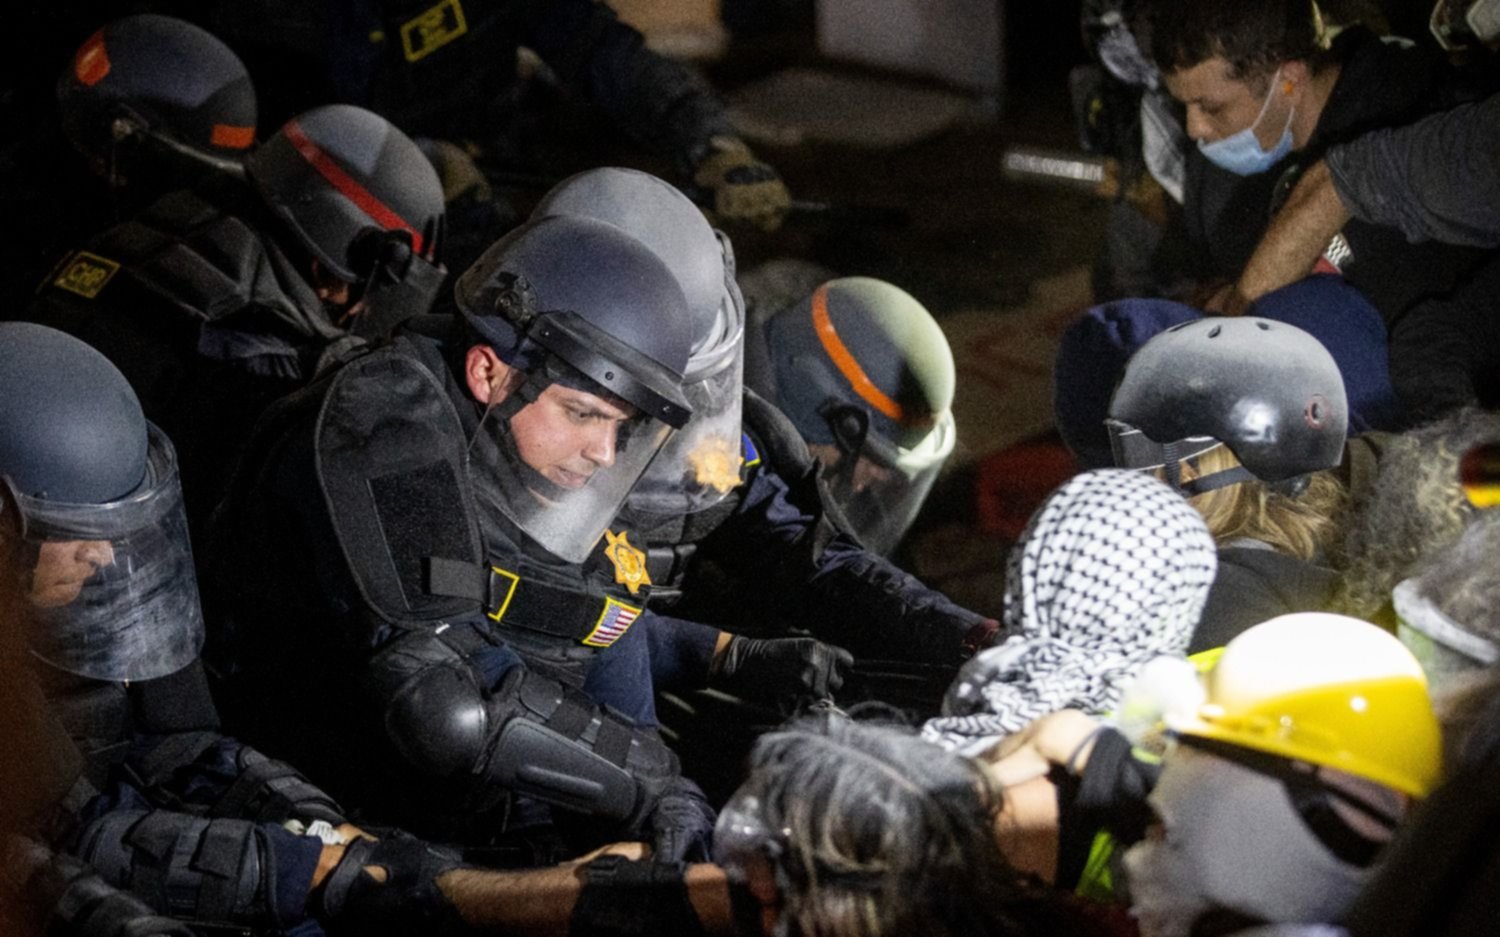 Los Angeles: la policía avanzó sobre los estudiantes que acampaban a favor de Palestina